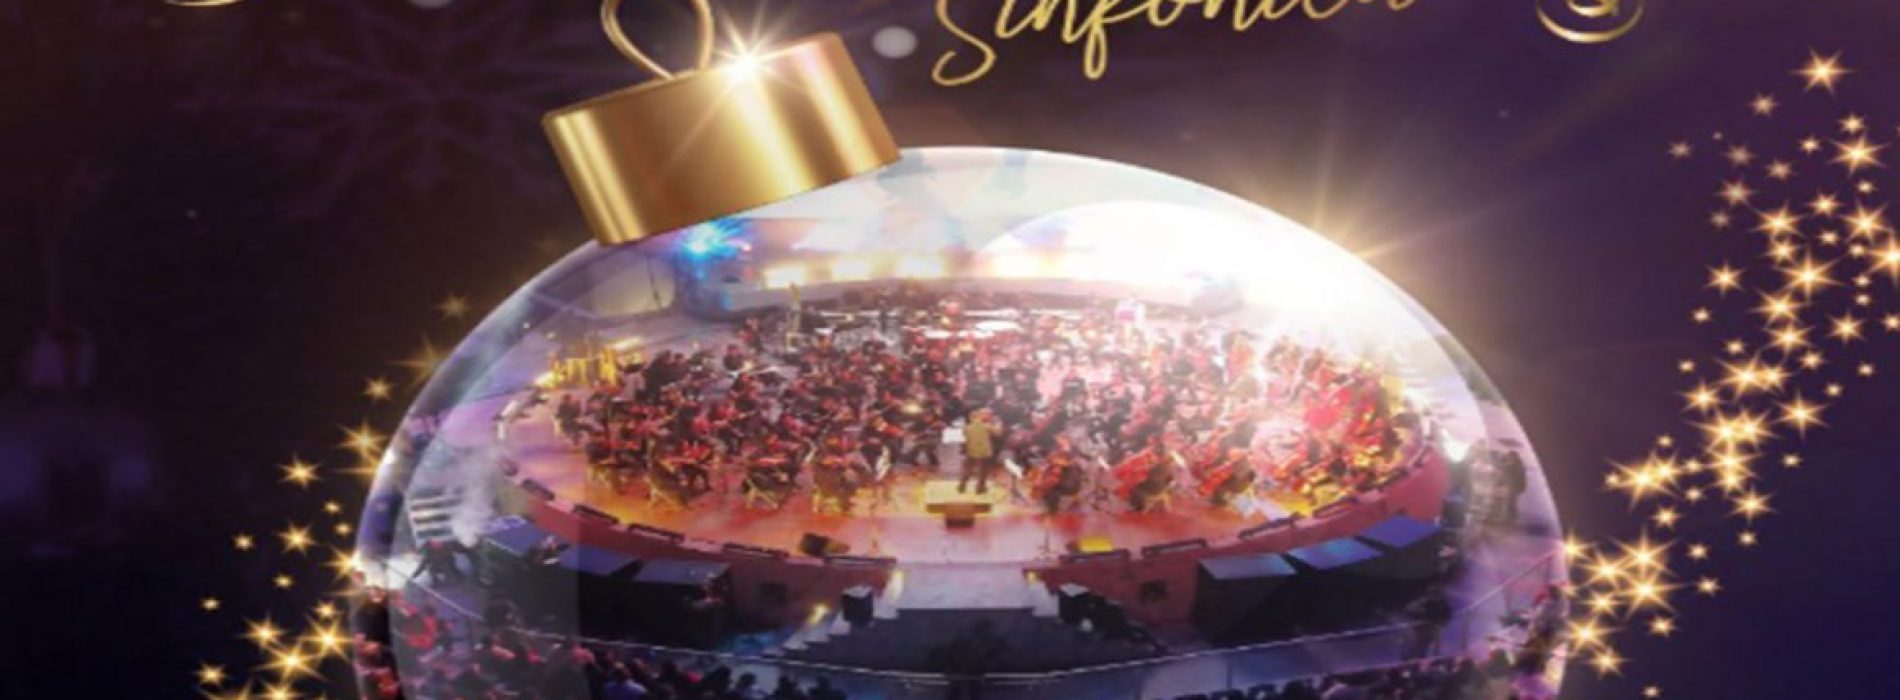 Realizarán concierto Navidad Sinfónica en el auditorio Guelaguetza